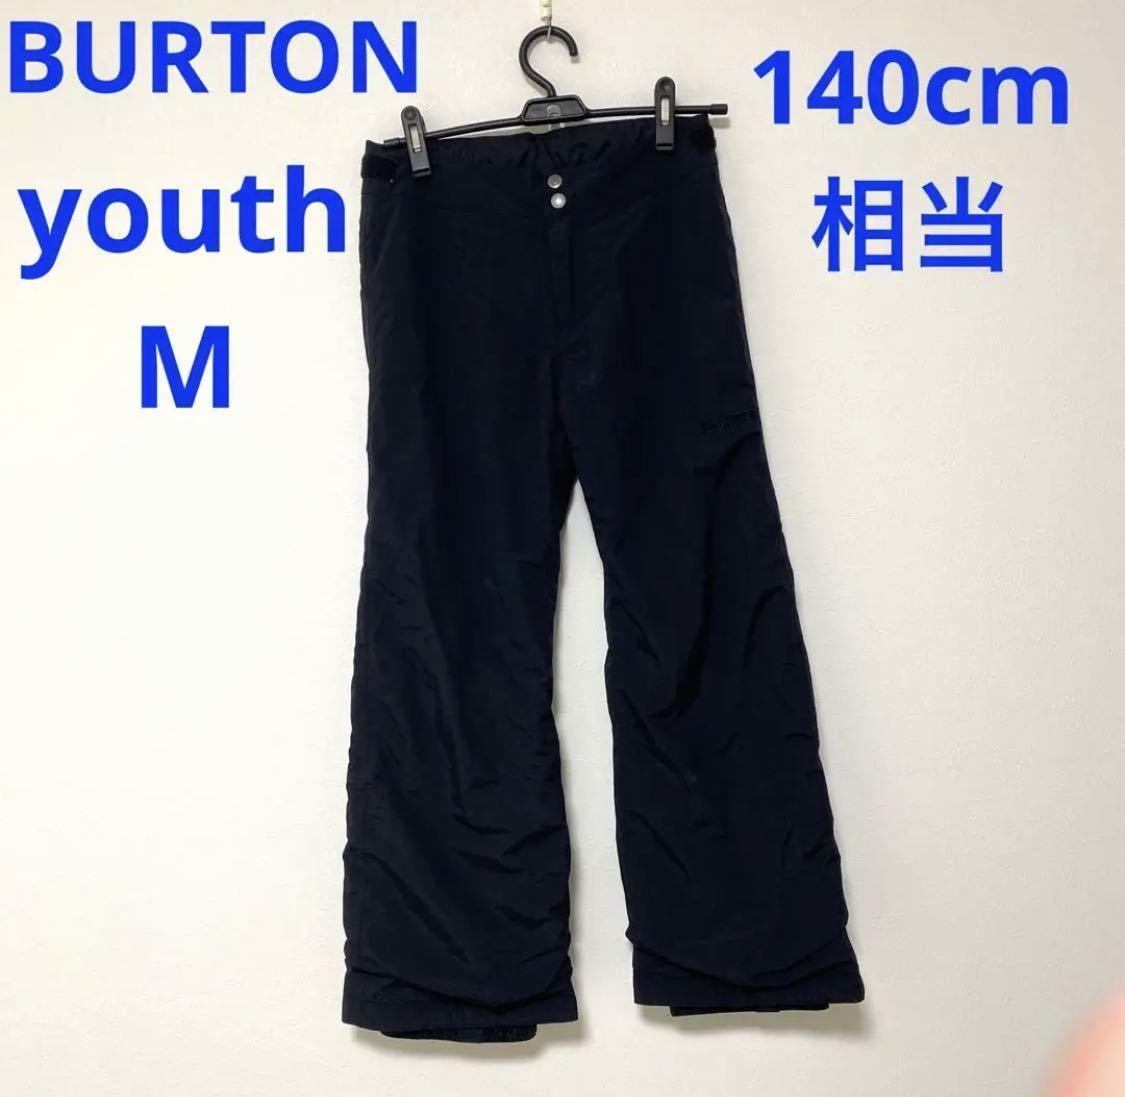 【140cm】BURTON キッズ スノーボード パンツ youth M